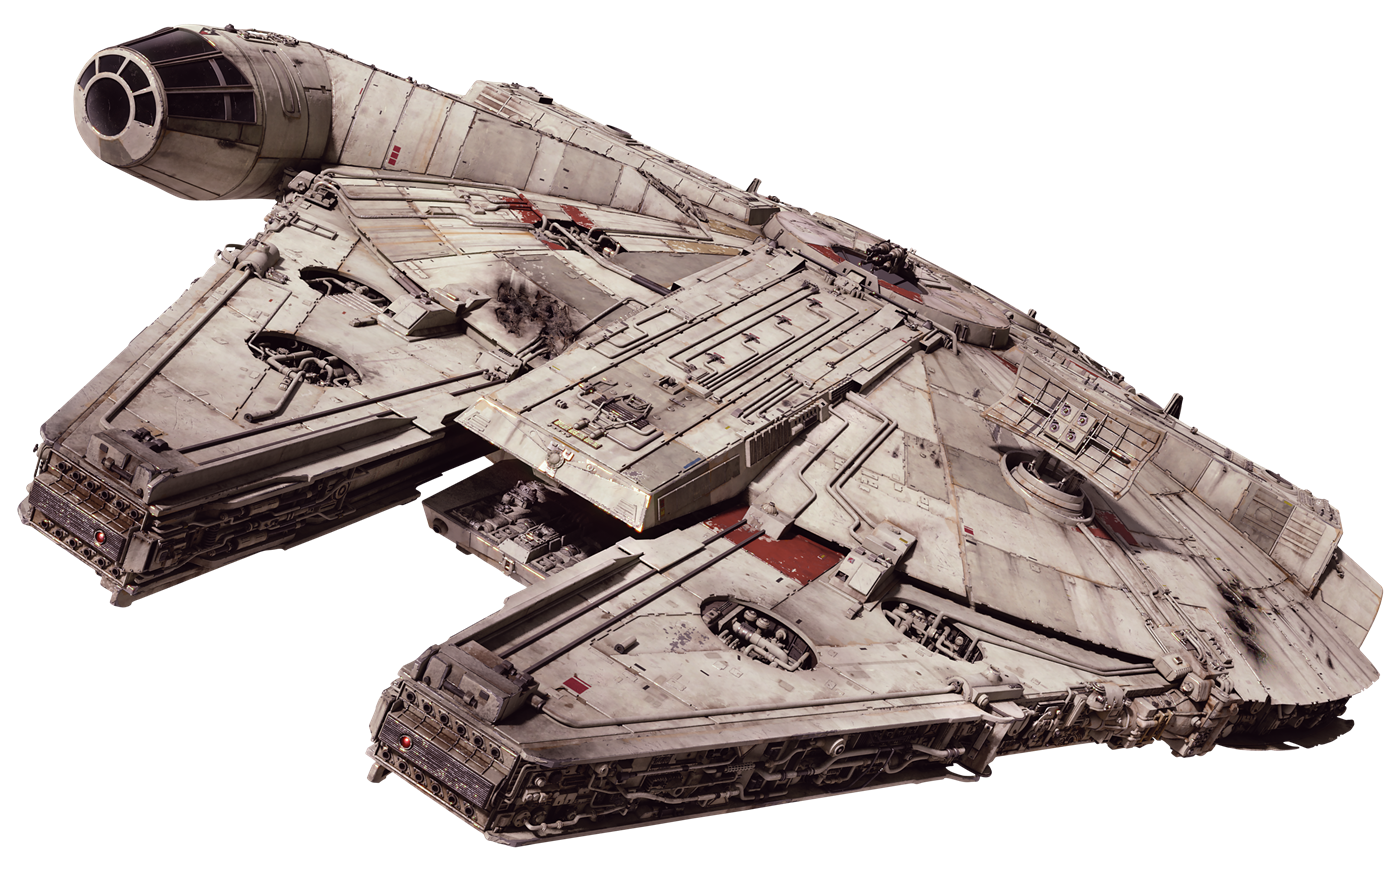 Millennium Falcon Star Wars Télécharger limage PNG Transparente